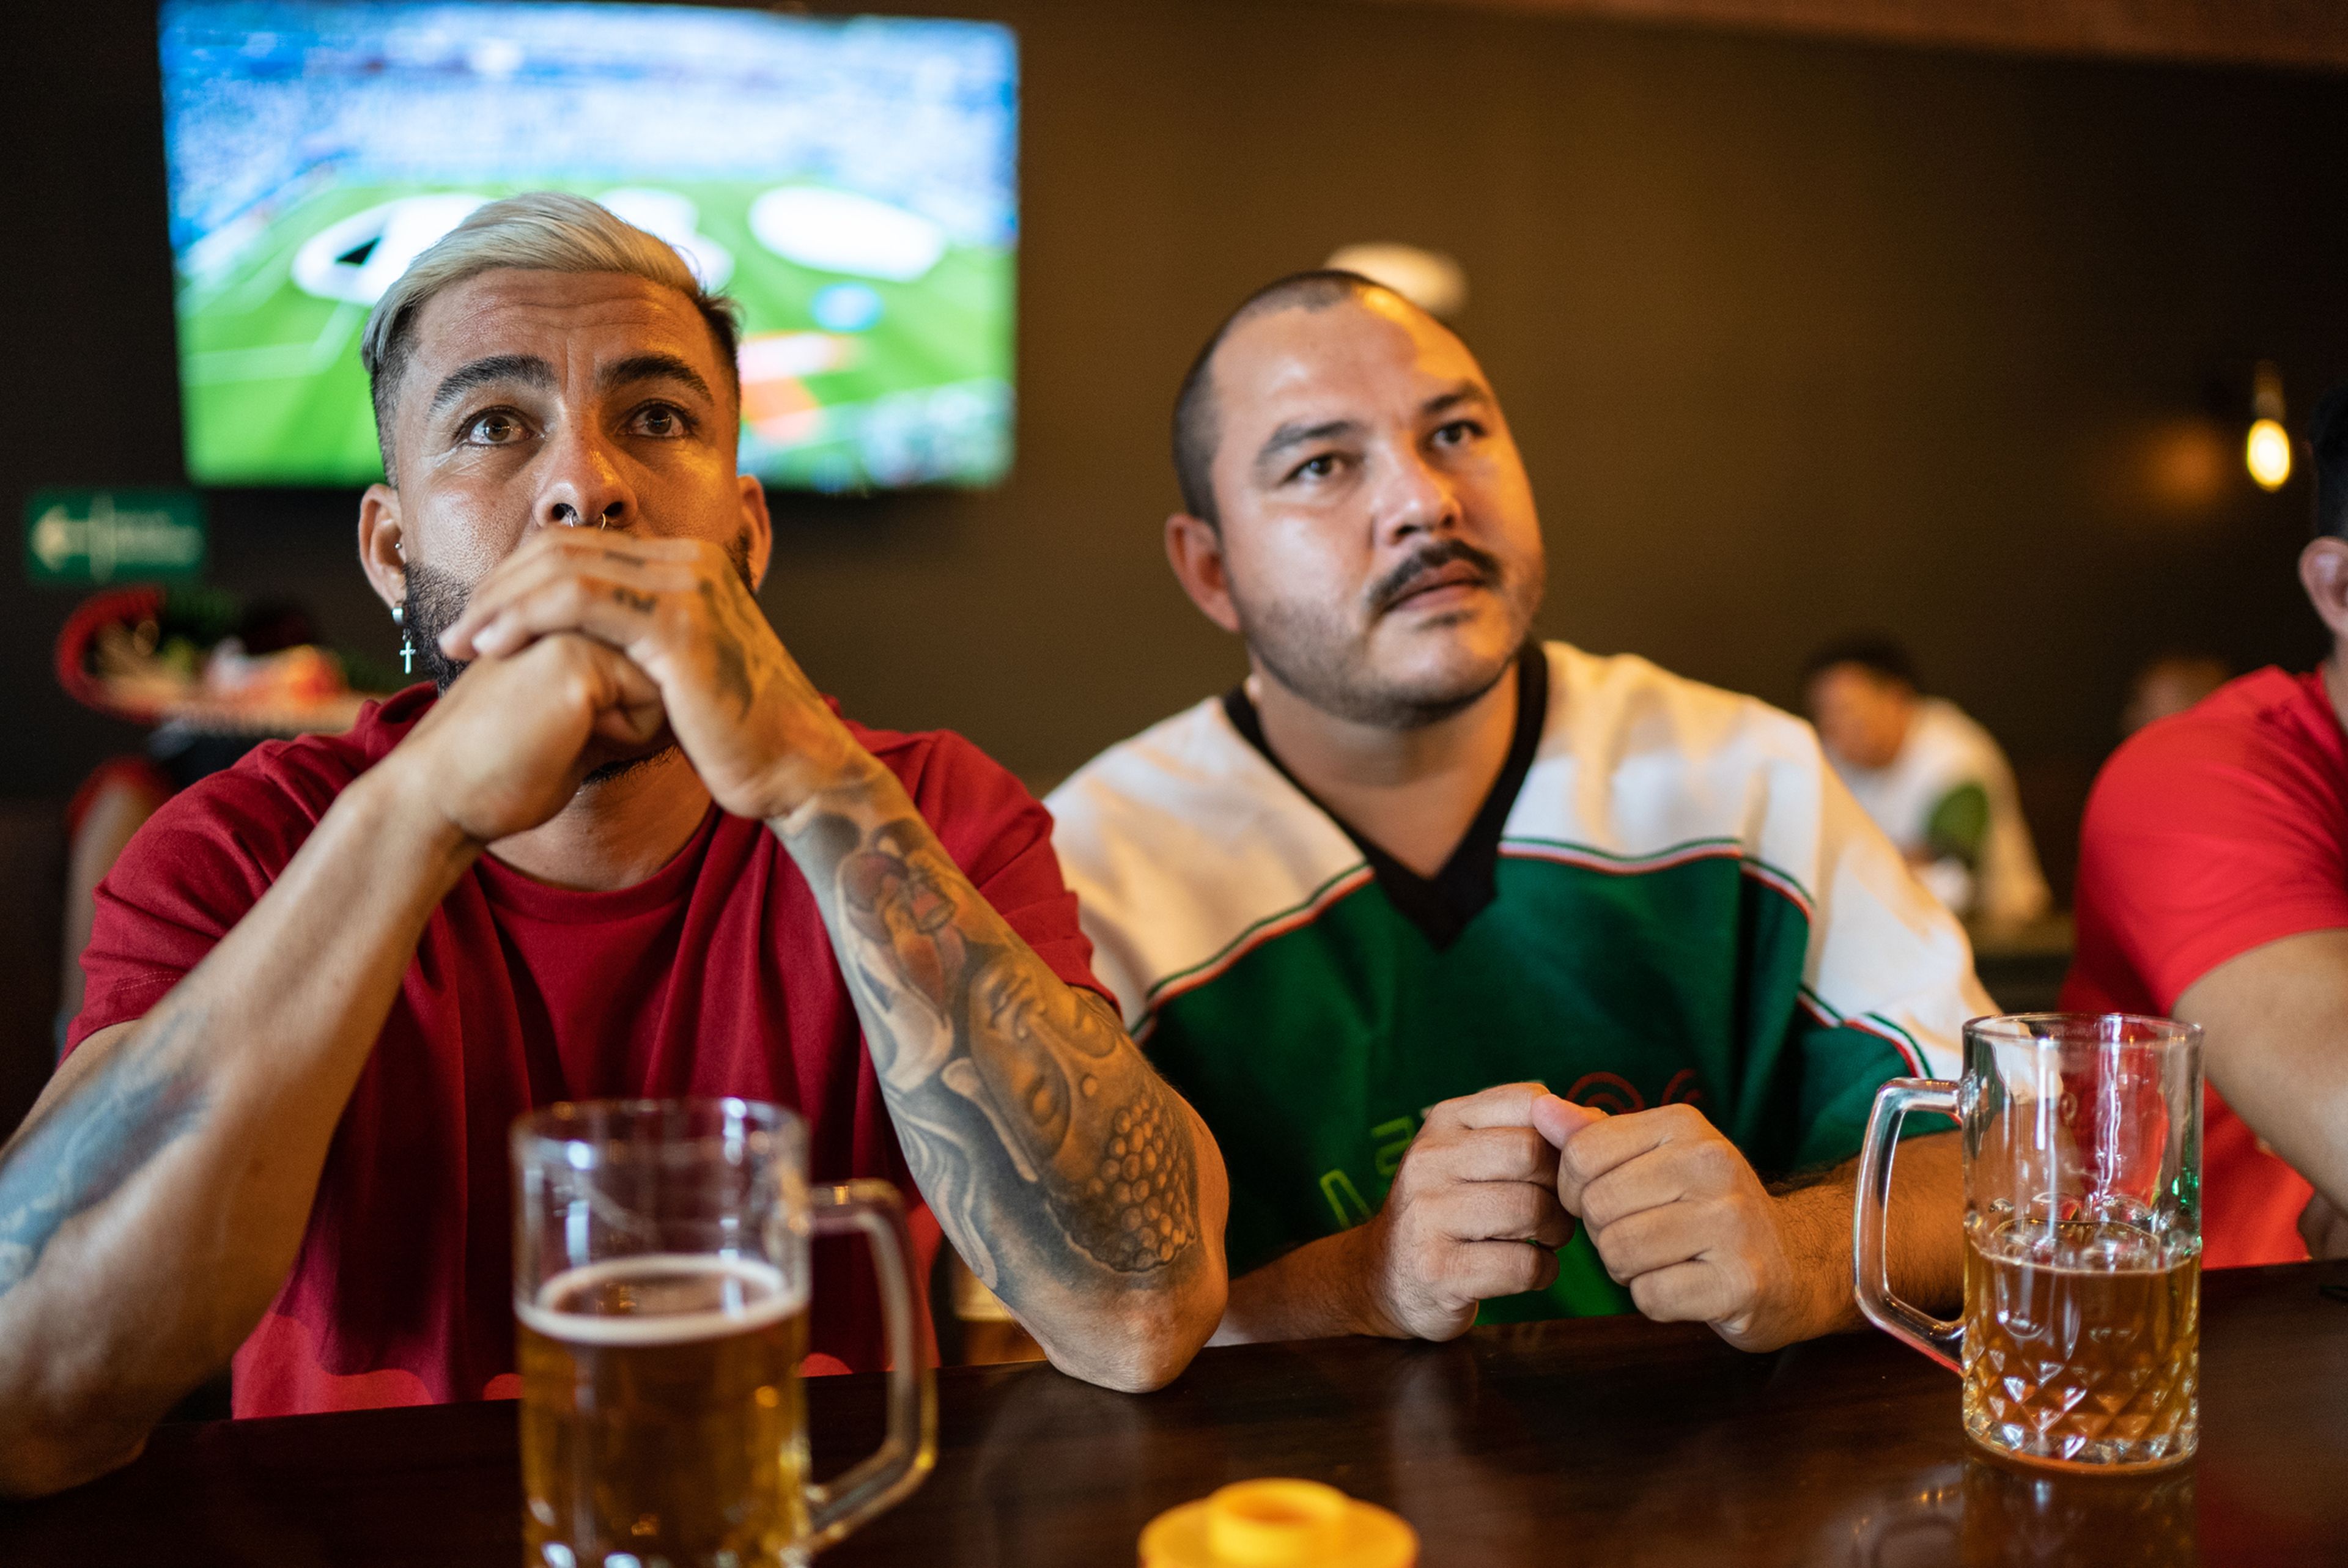 Amigos ven el fútbol en la televisión de un bar, con cerveza